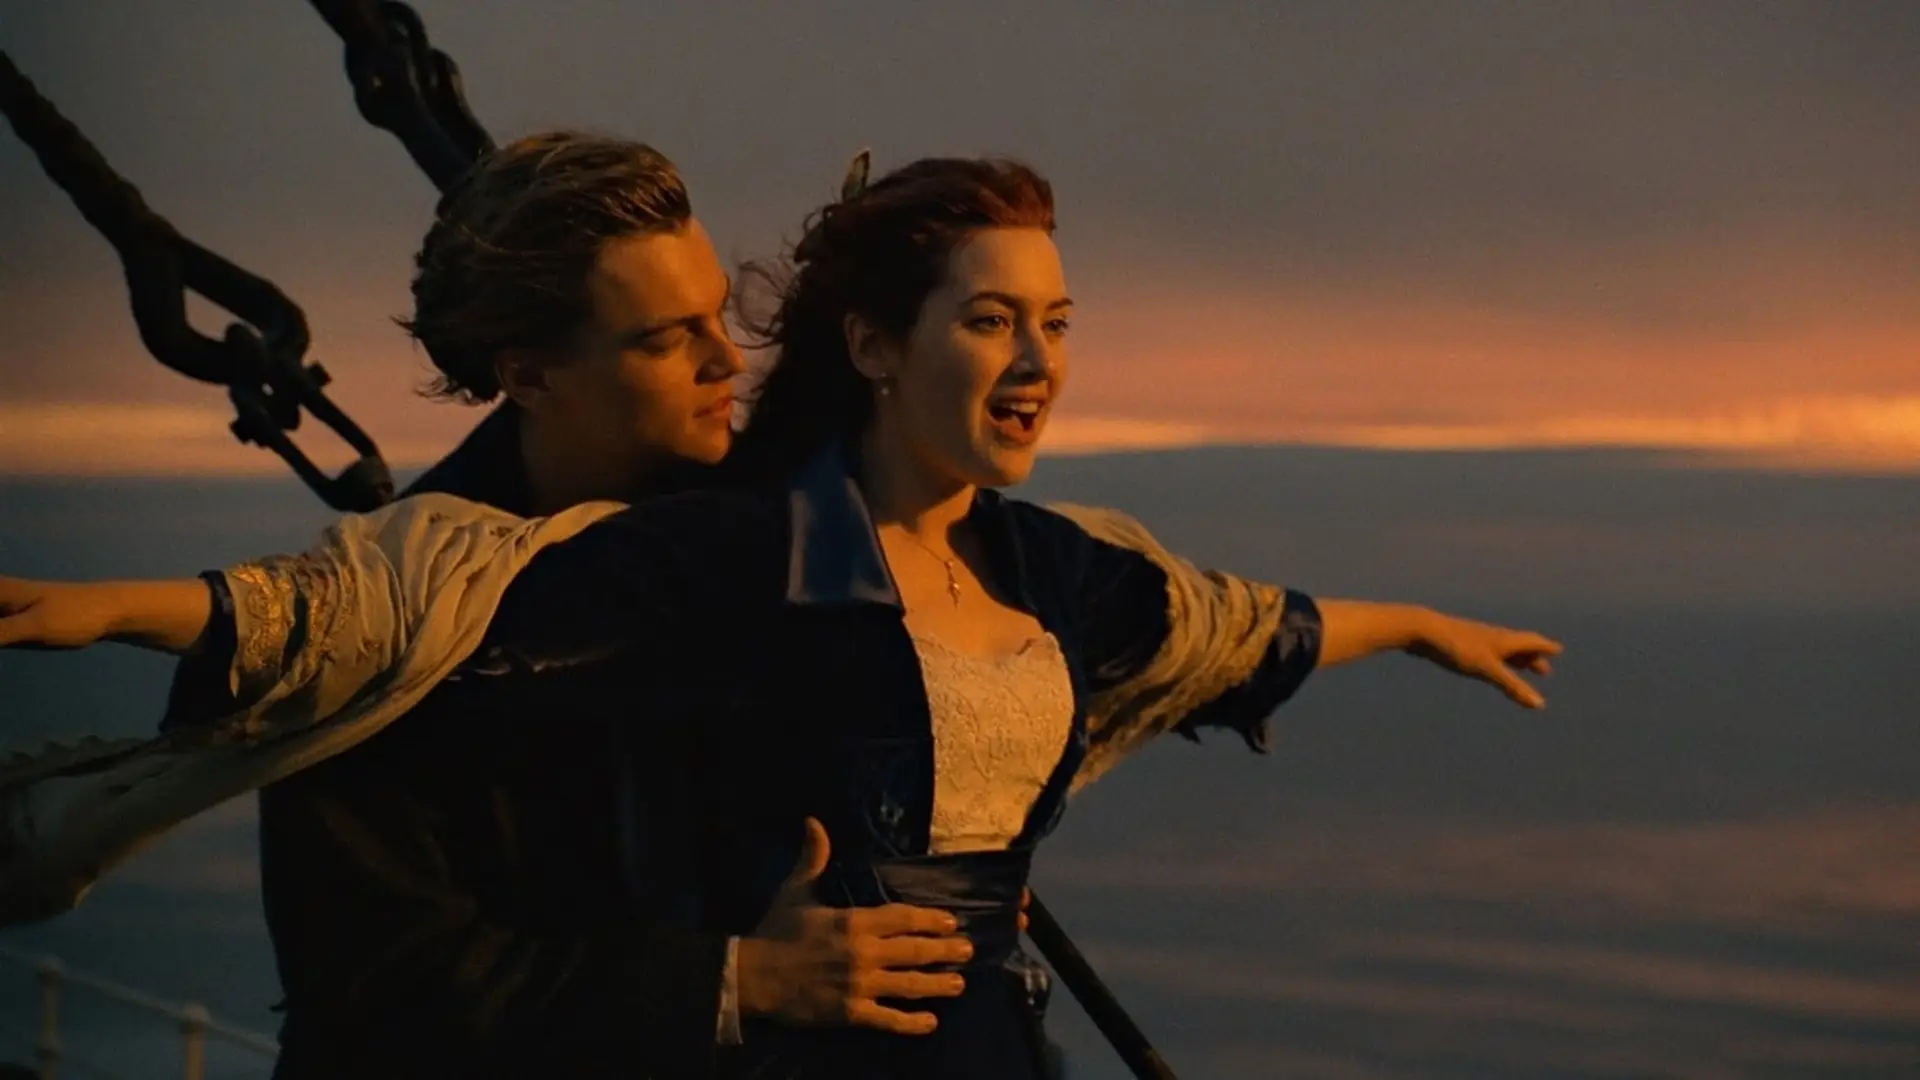 Famosa escena de los protagonistas de Titanic en la cubierta del barco para representar las peliculas románticas de Disney Plus